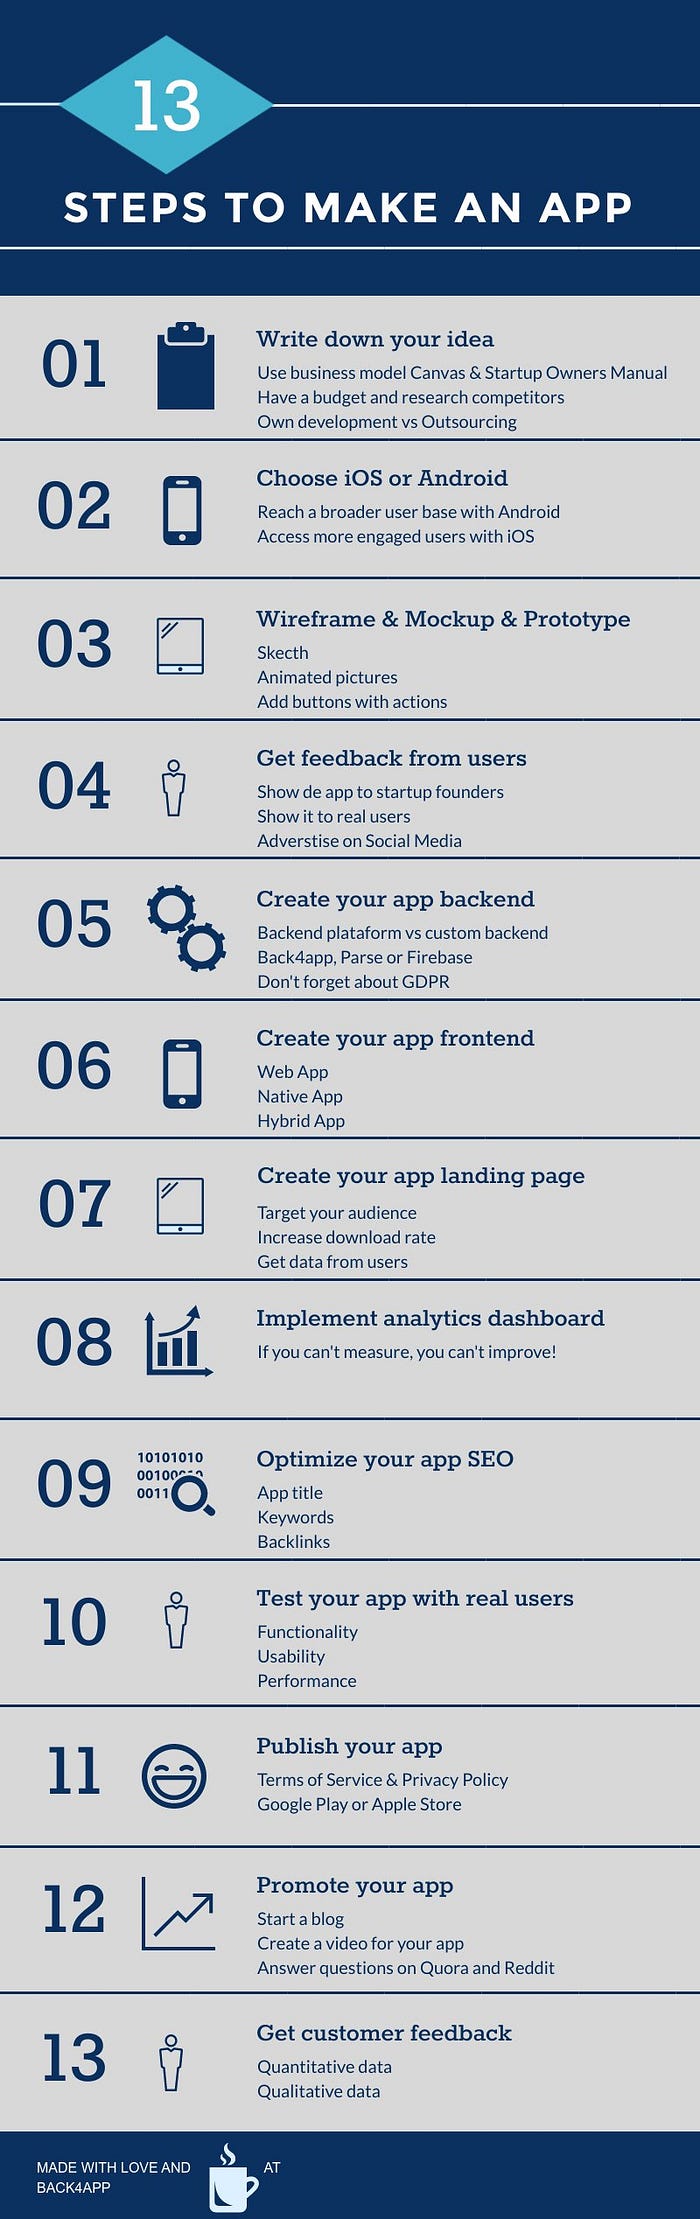 Como fazer um aplicativo? 13 passos para um app de sucesso. | iMasters